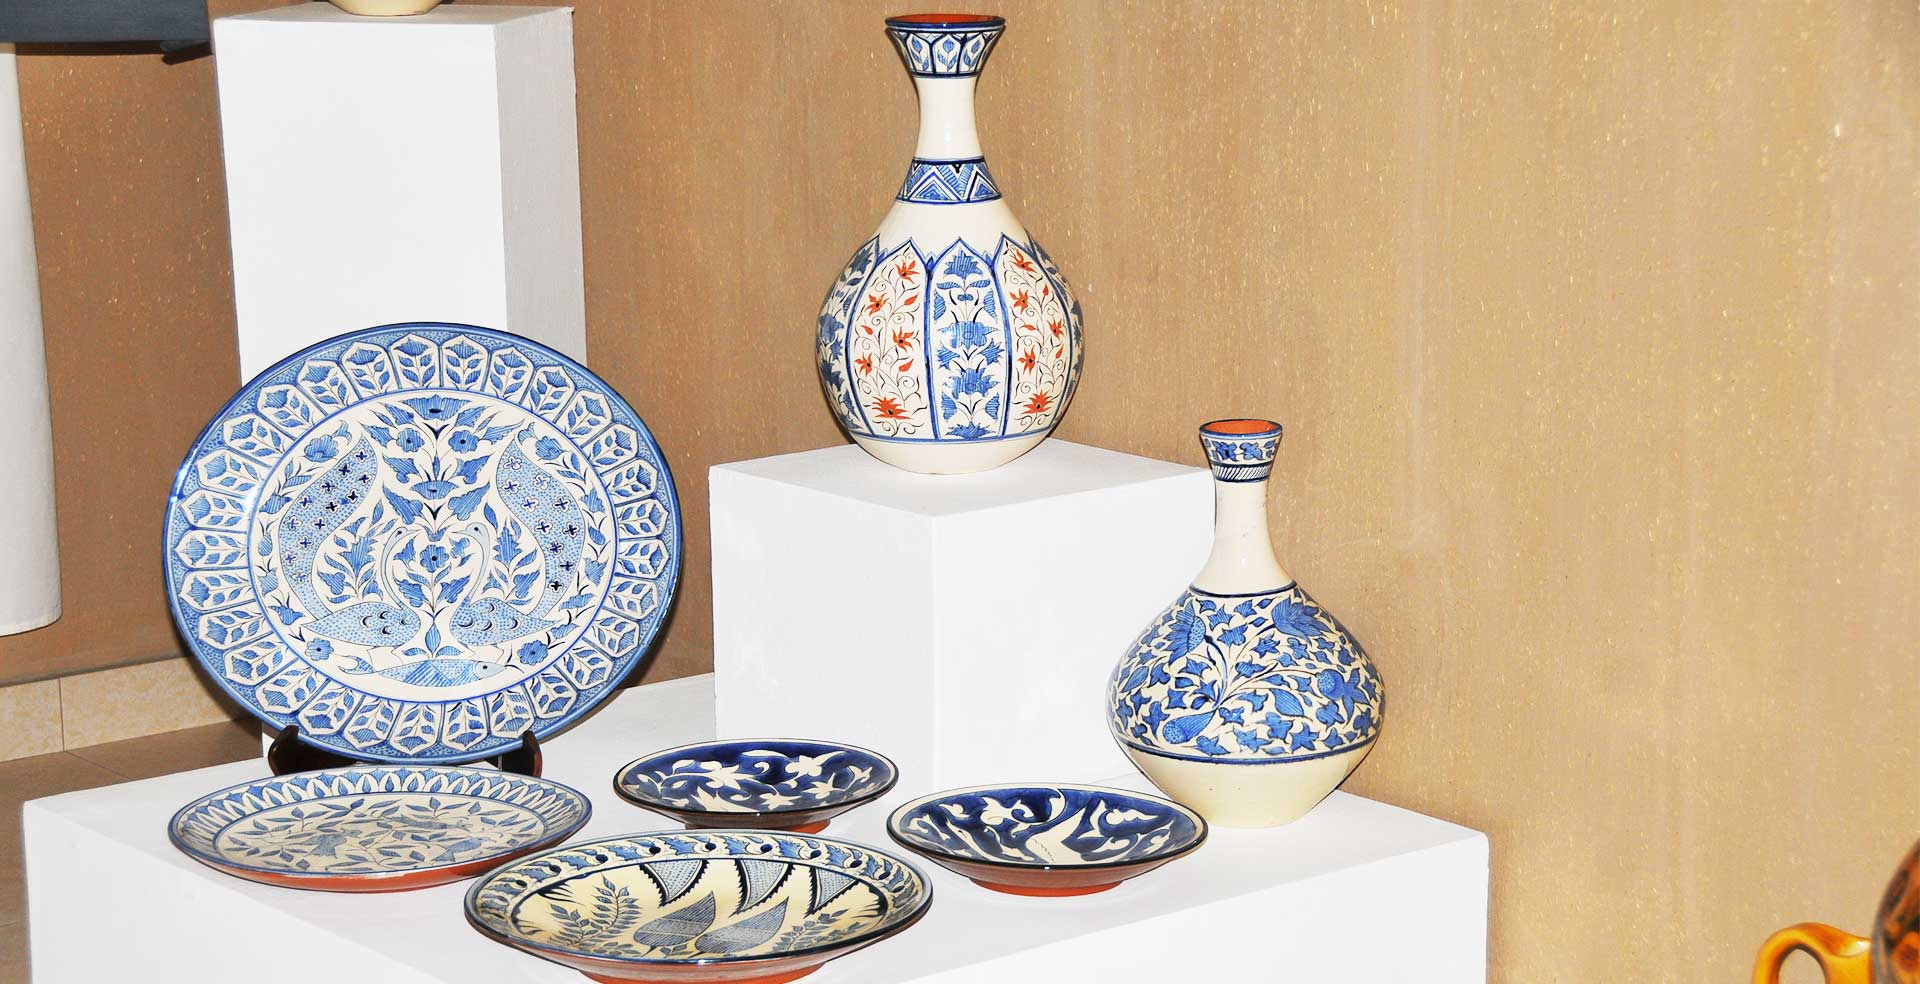 Textiles, Pottery & Ceramics of Uzbekistan